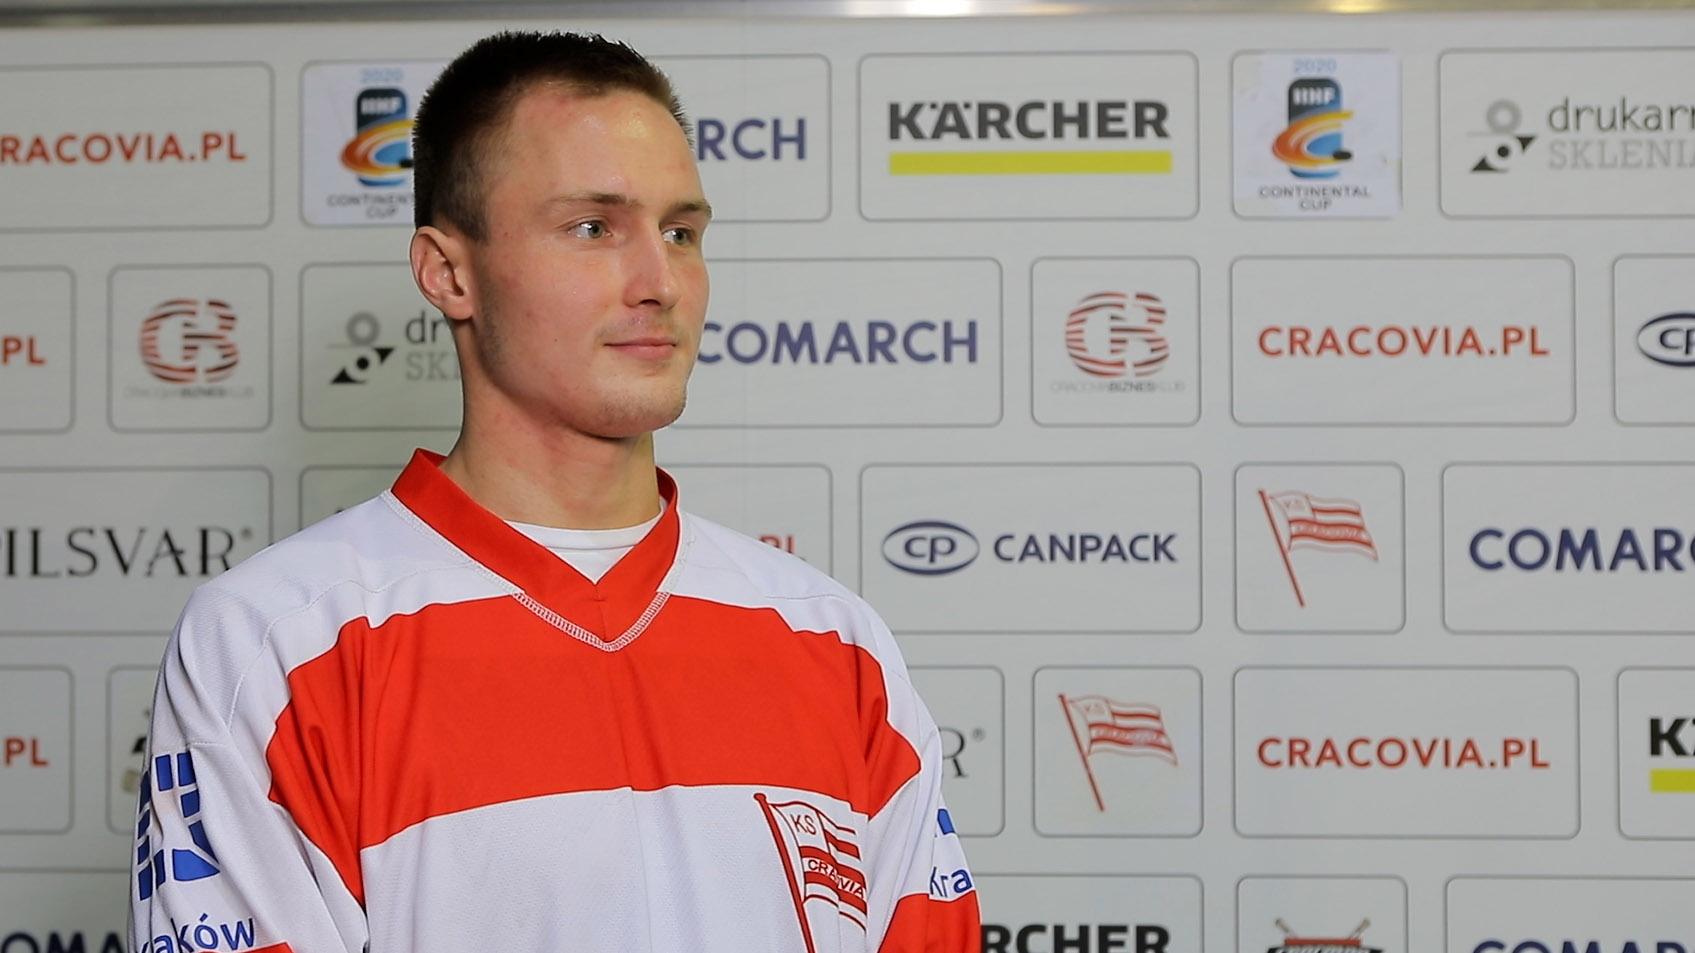 Michal Gutwald: Cracovia to jeden z najlepszych Klubów w Polsce [VIDEO]